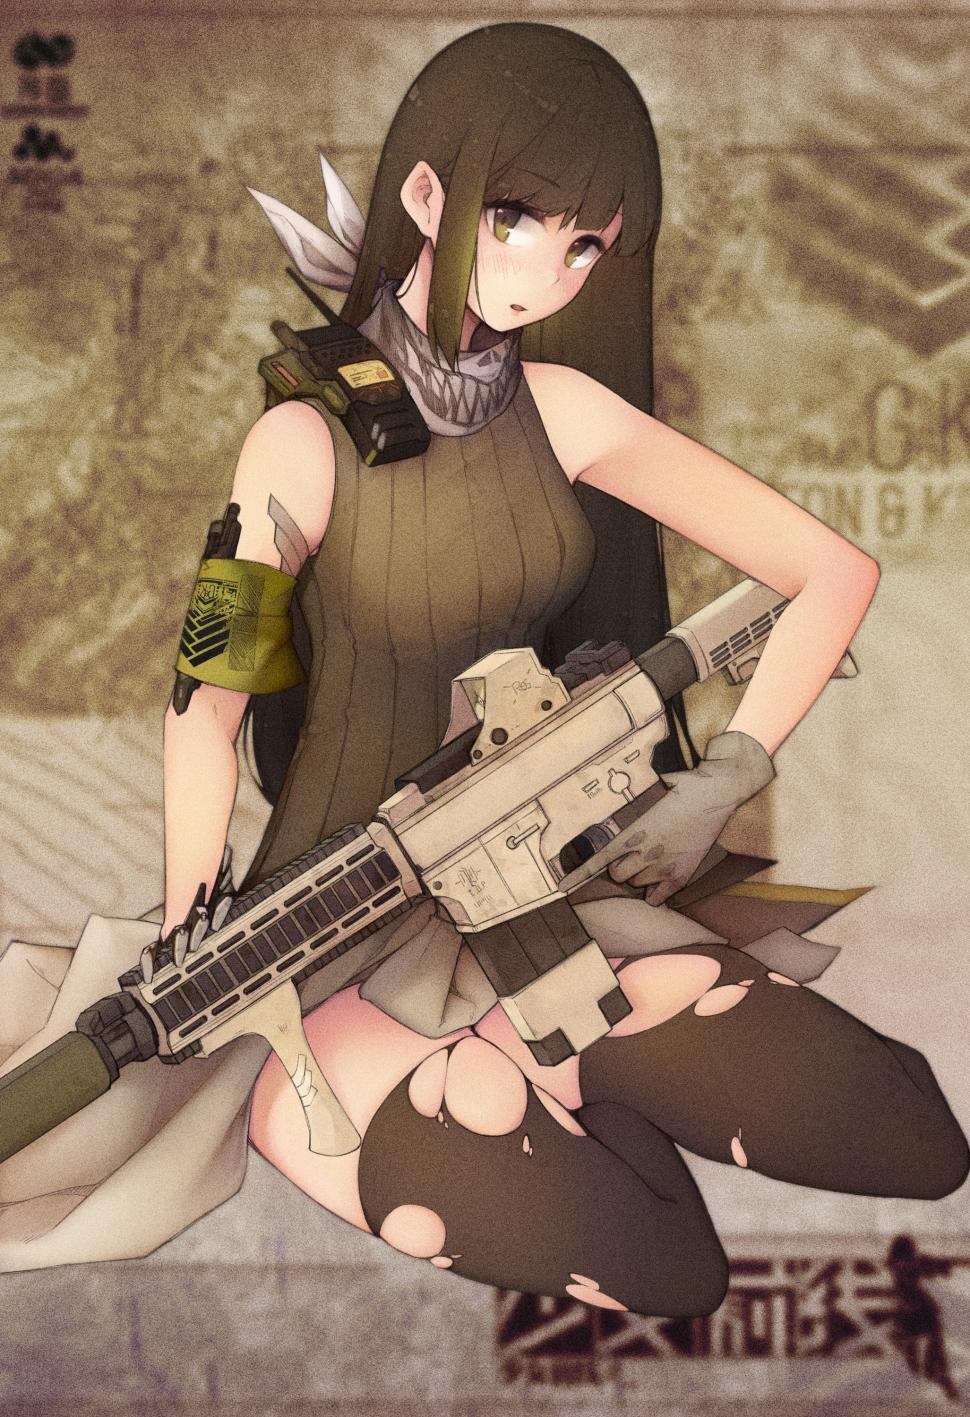 Anime Girls Frontline Girls Frontline Gun Wallpaper,anime - Mobile Phone - HD Wallpaper 